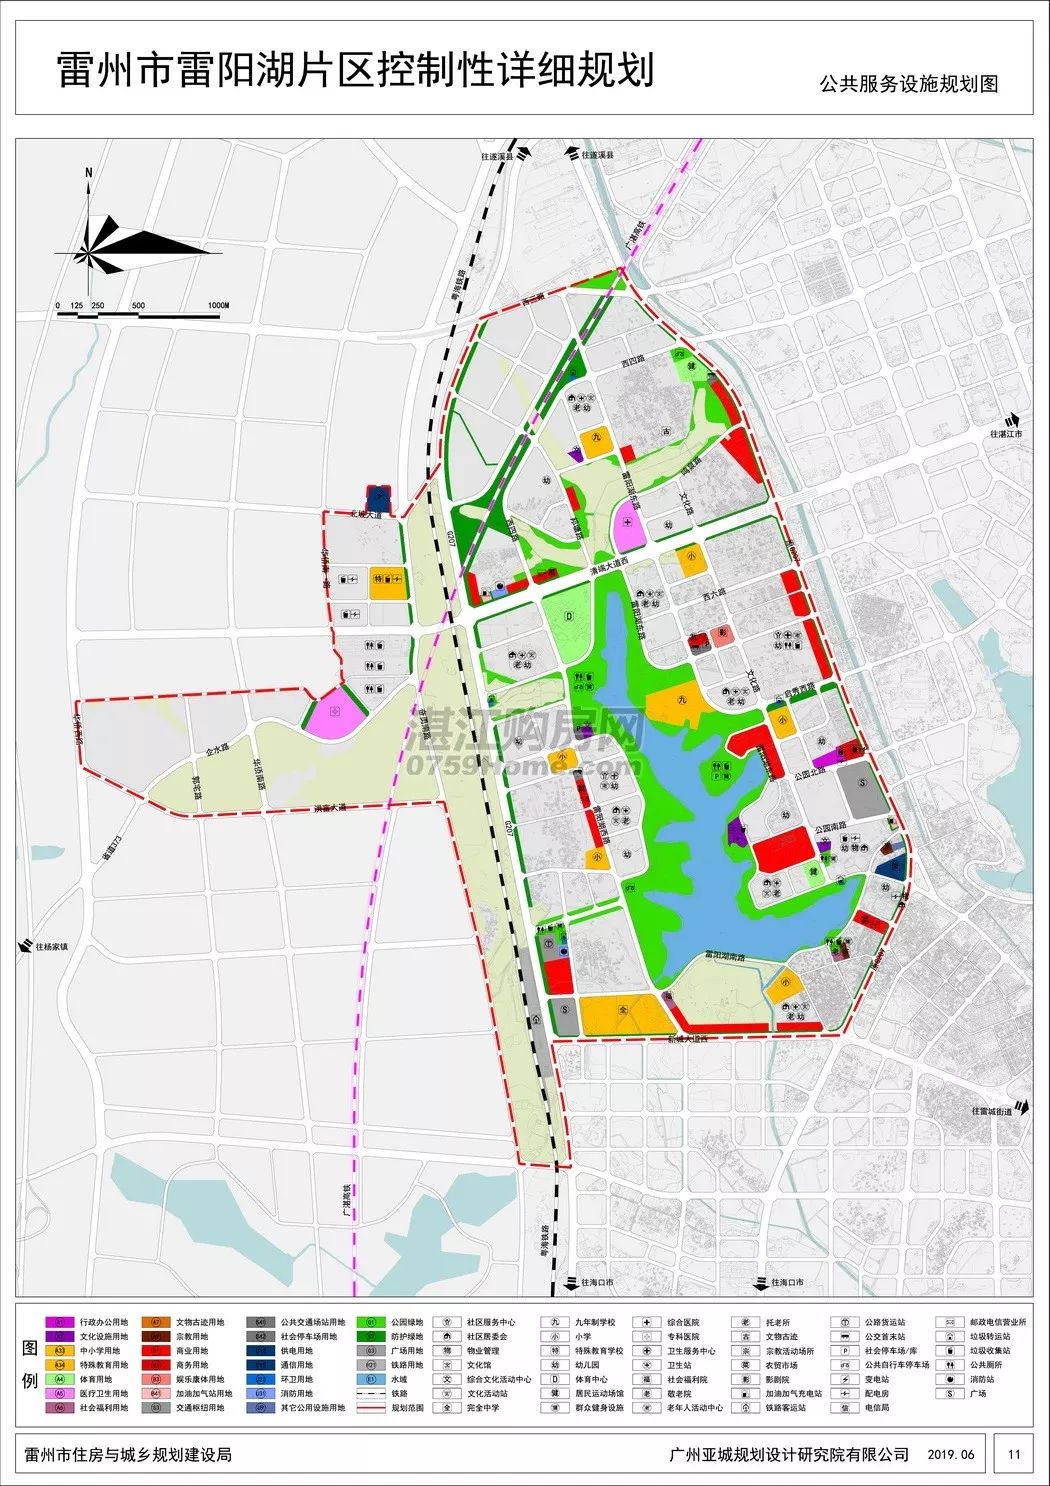 雷州市沈塘片区控制性详细规划公示一,规划范围规划区东至雷湖快线